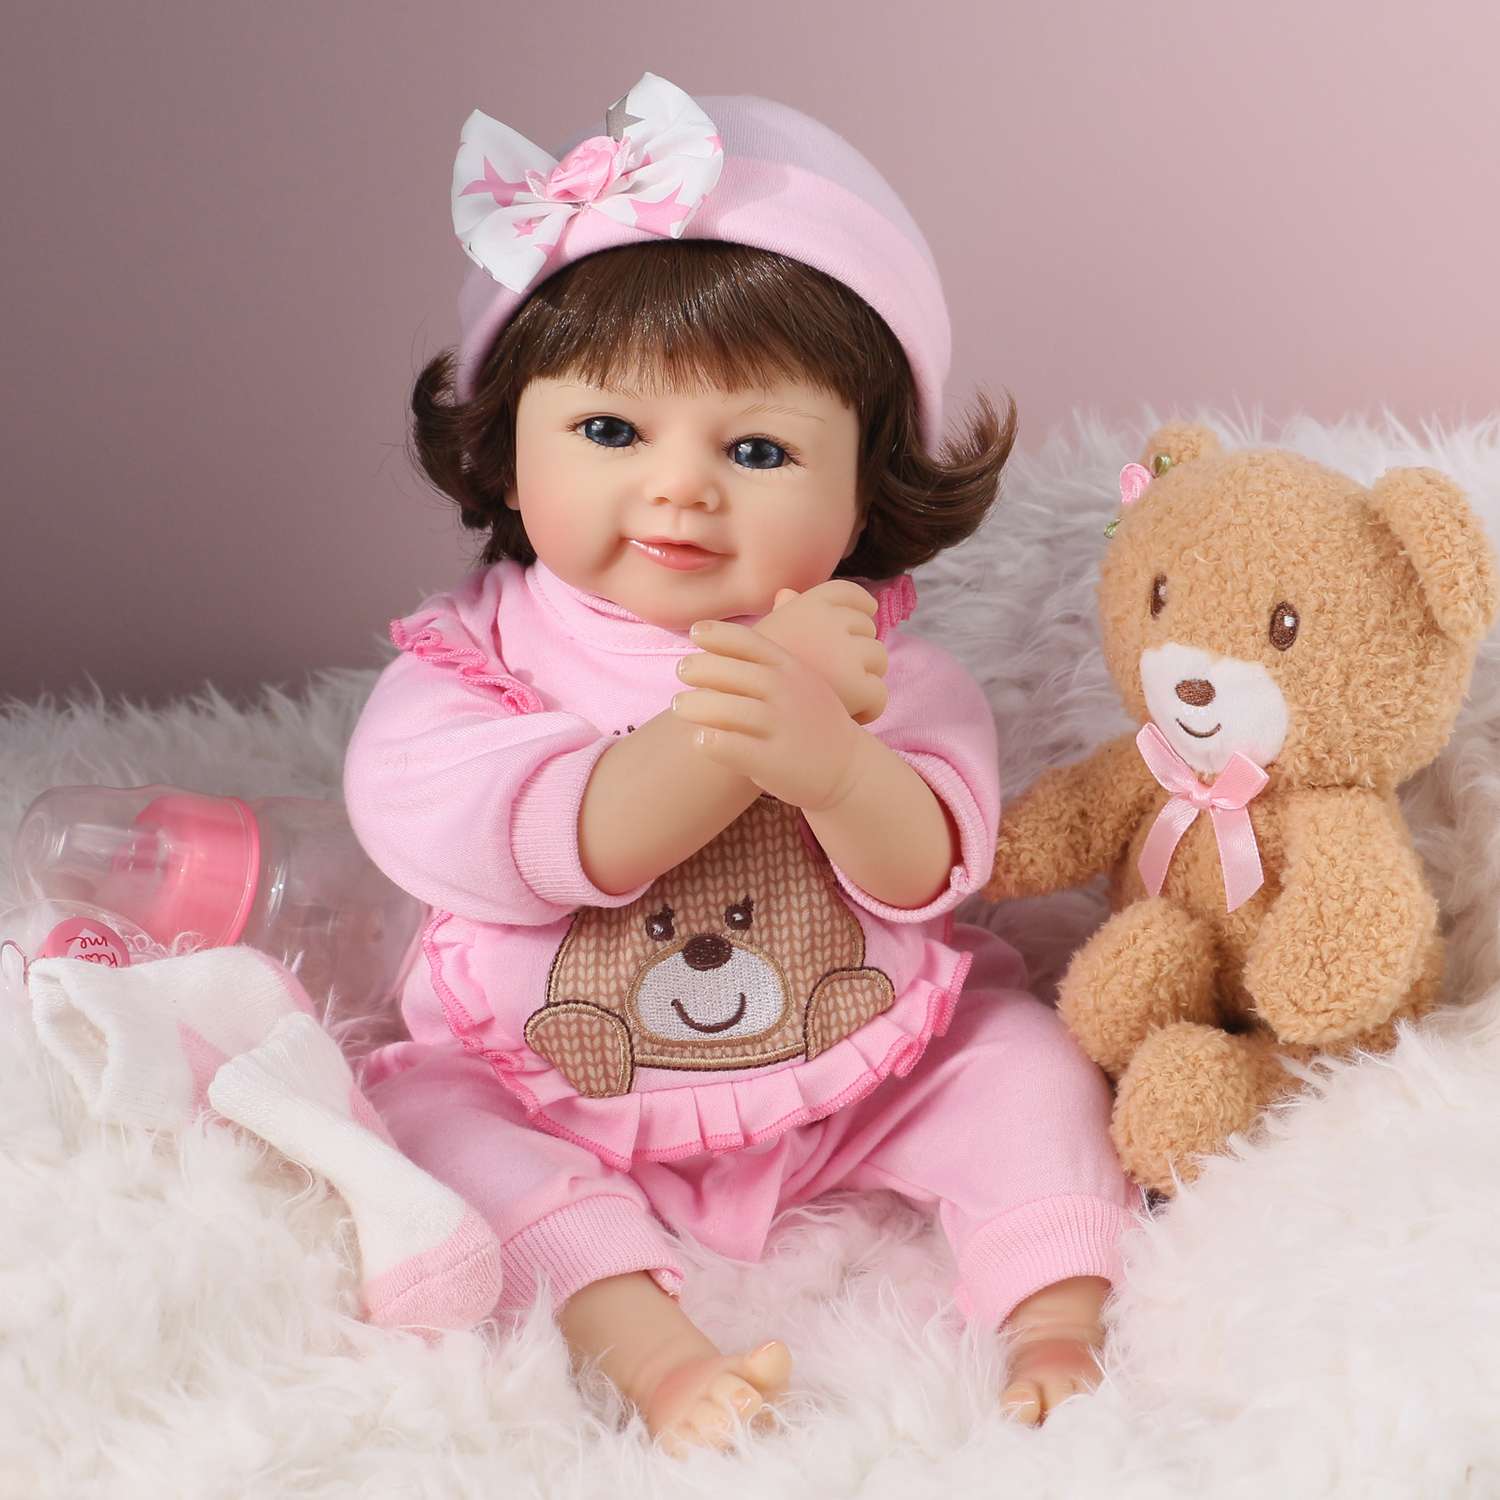 Кукла Реборн QA BABY Варвара девочка большая пупс набор игрушки для девочки 42 см 45008 - фото 5